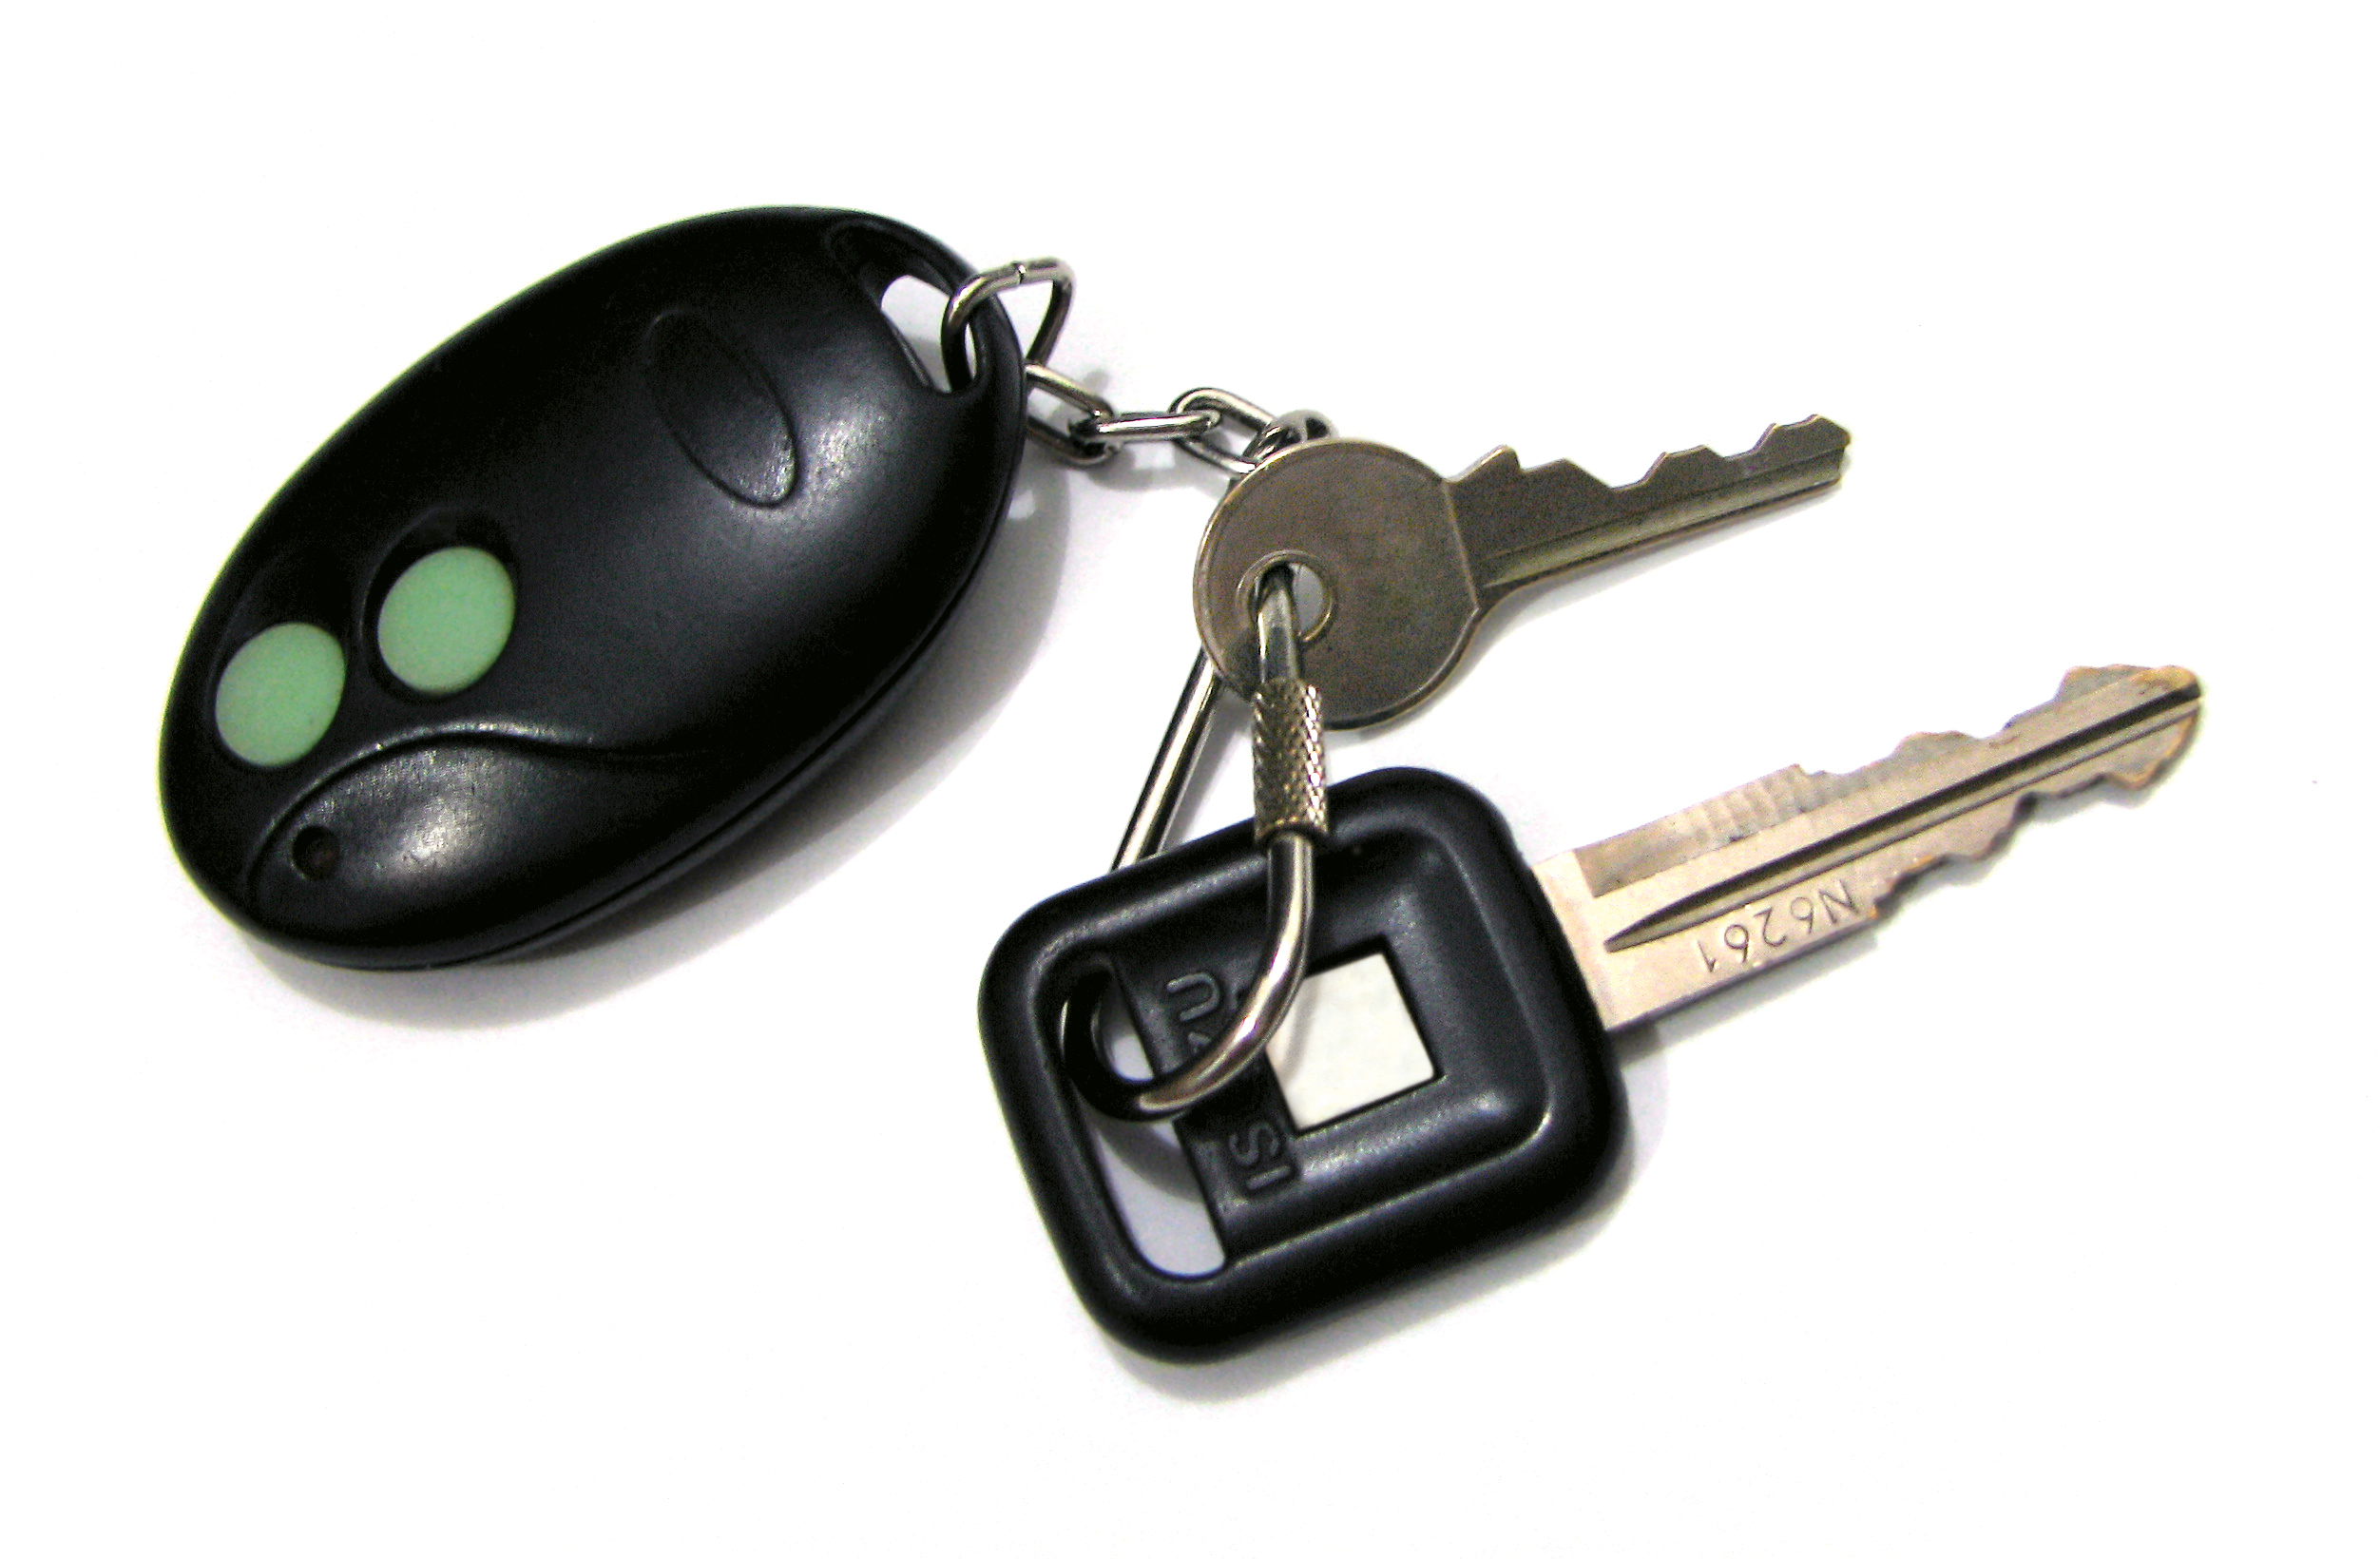 Keyed my car. Brfk50 брелок сигнализации. Ключи для машины. Ключи от авто. Автомобильные ключи с брелком сигнализации.